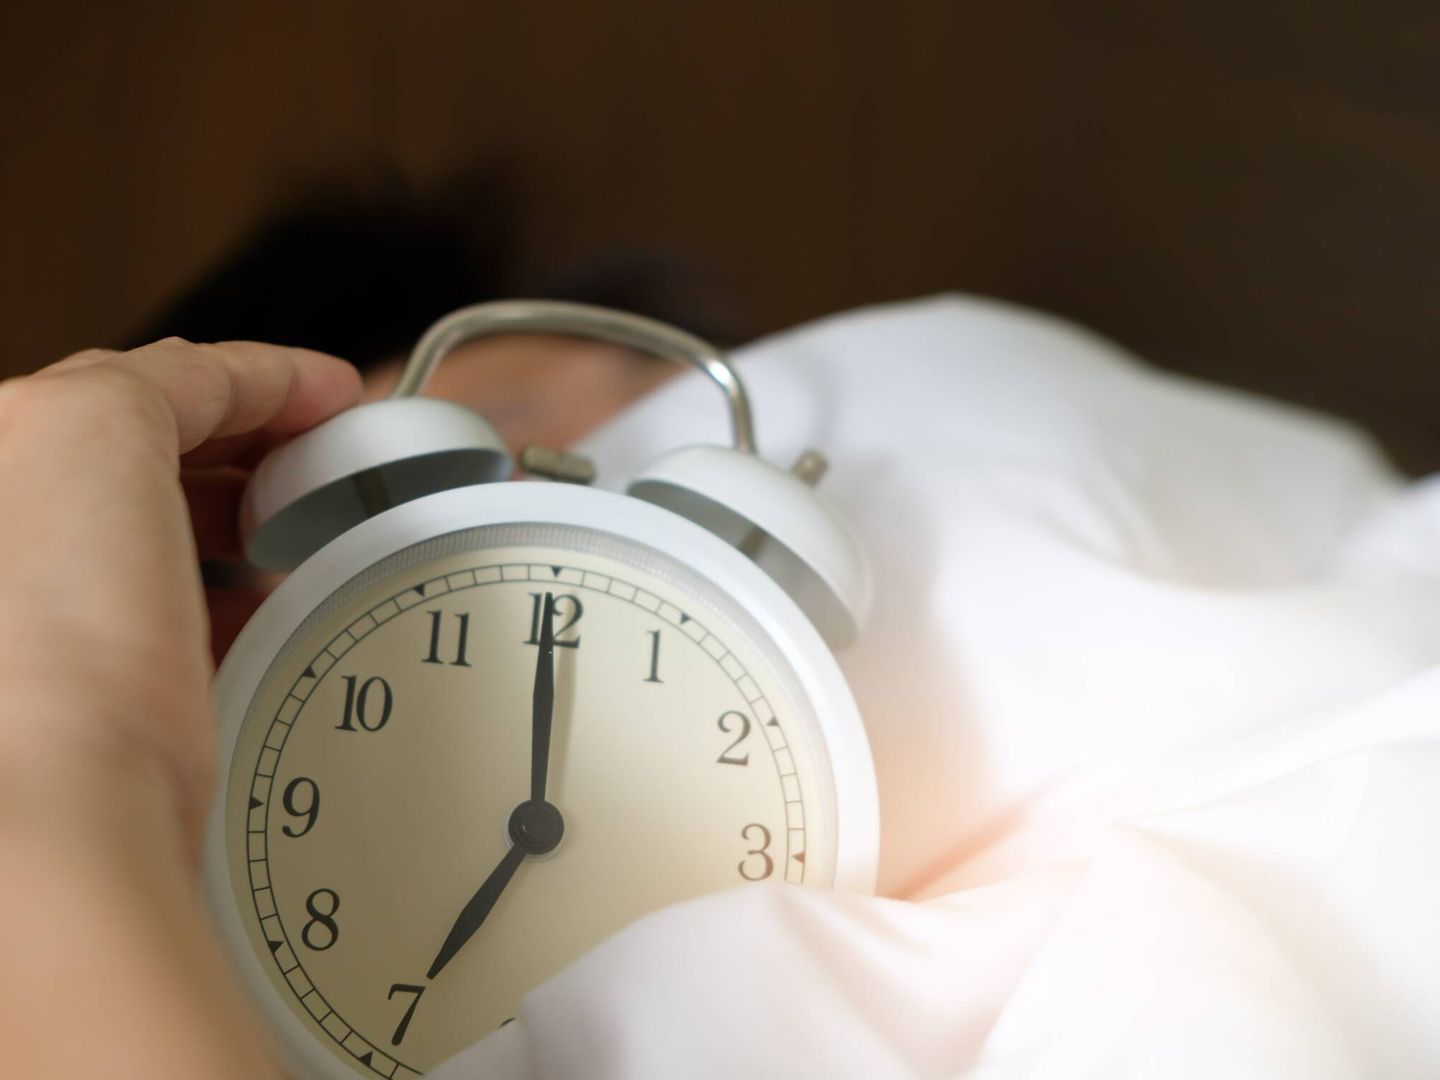 Una breve siesta puede retrasar la contracción del cerebro, que ocurre más rápido en personas con enfermedades neurodegenerativas. (Pexels)